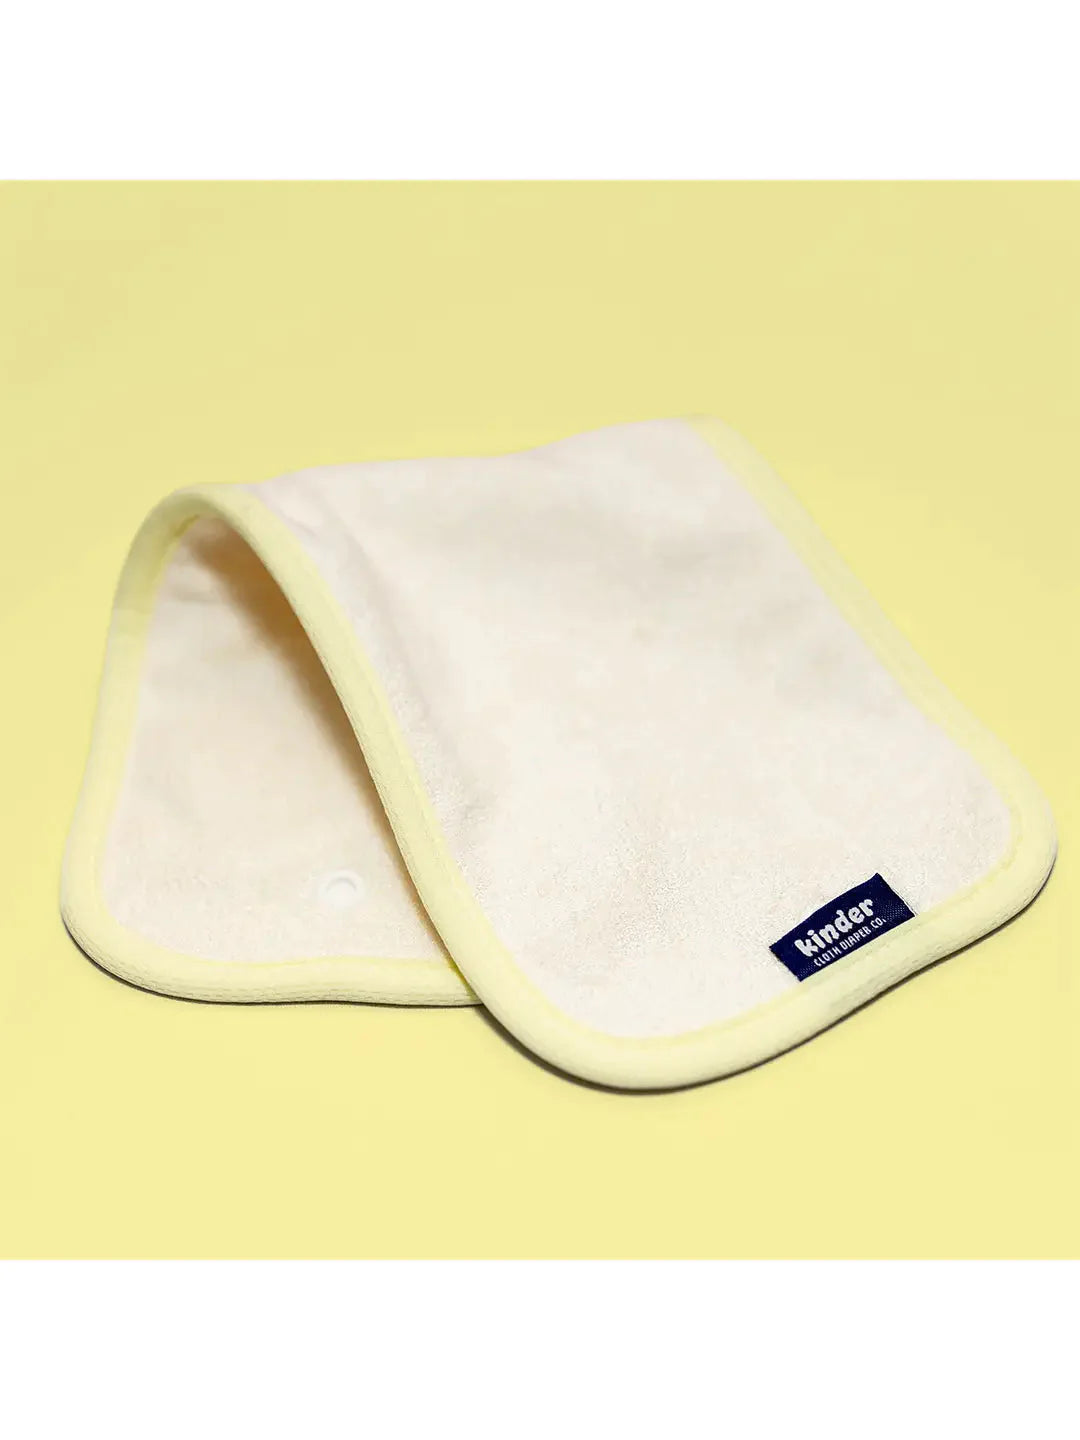 Kinder Cloth Diaper Co. Pocket Cloth Diaper Kinder Cloth Diaper Co. - Pocket Diaper